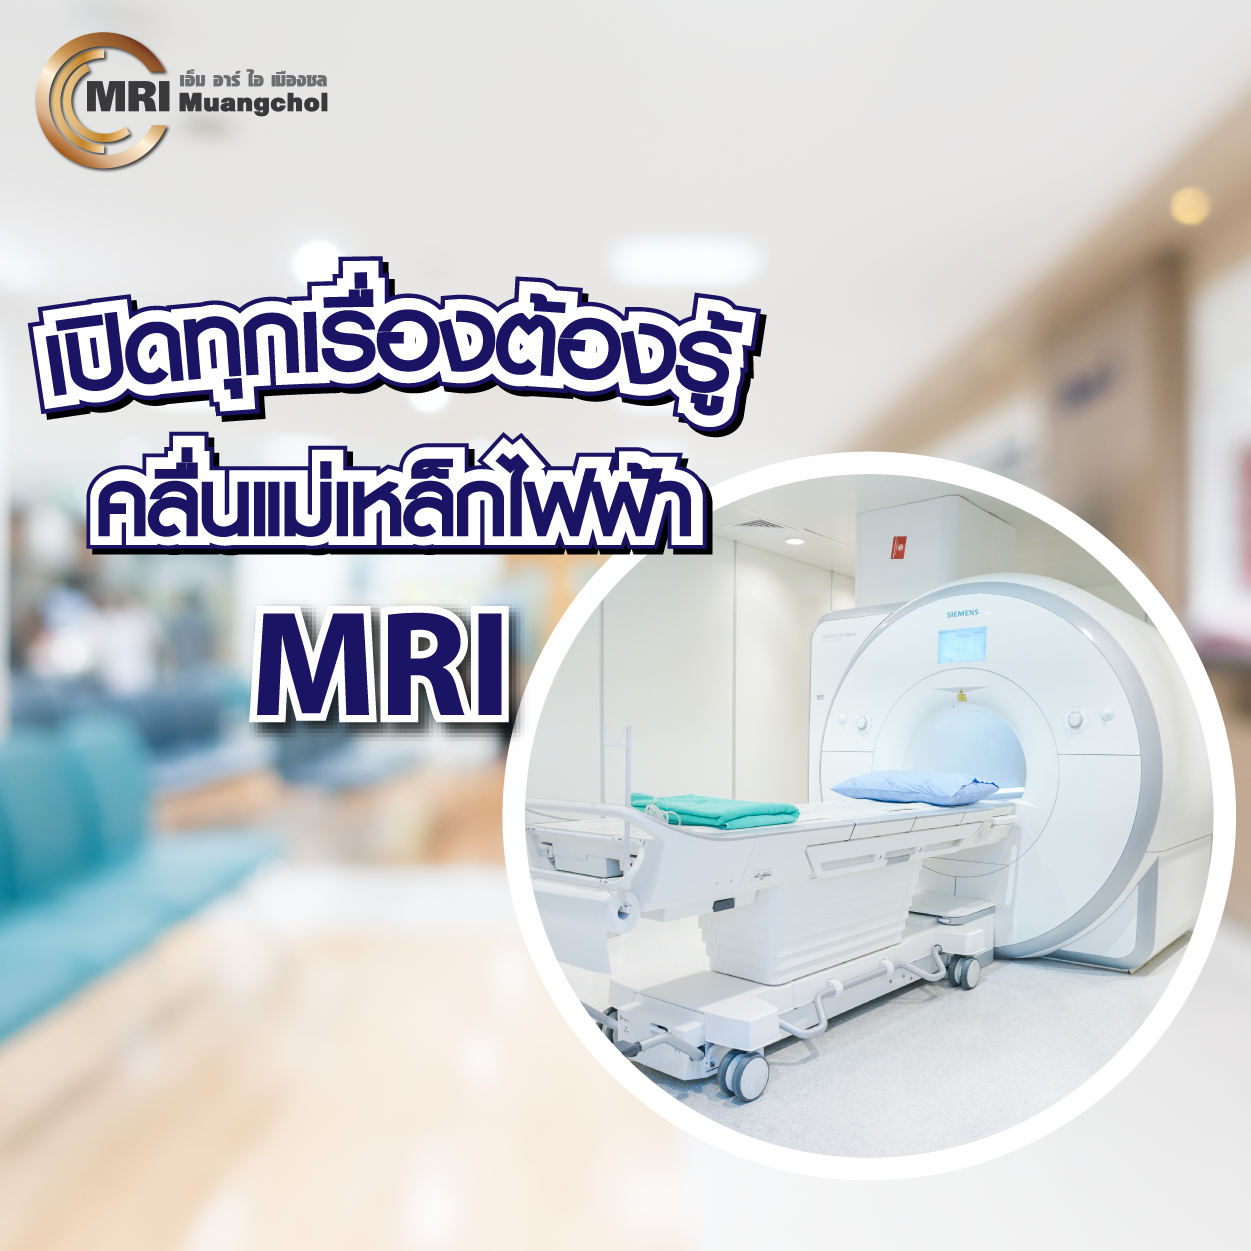 เปิดทุกเรื่องต้องรู้ อุโมงค์แม่เหล็กไฟฟ้า MRI - ความรู้สุขภาพ - โรงพยาบาลจุฬารัตน์ชลเวช